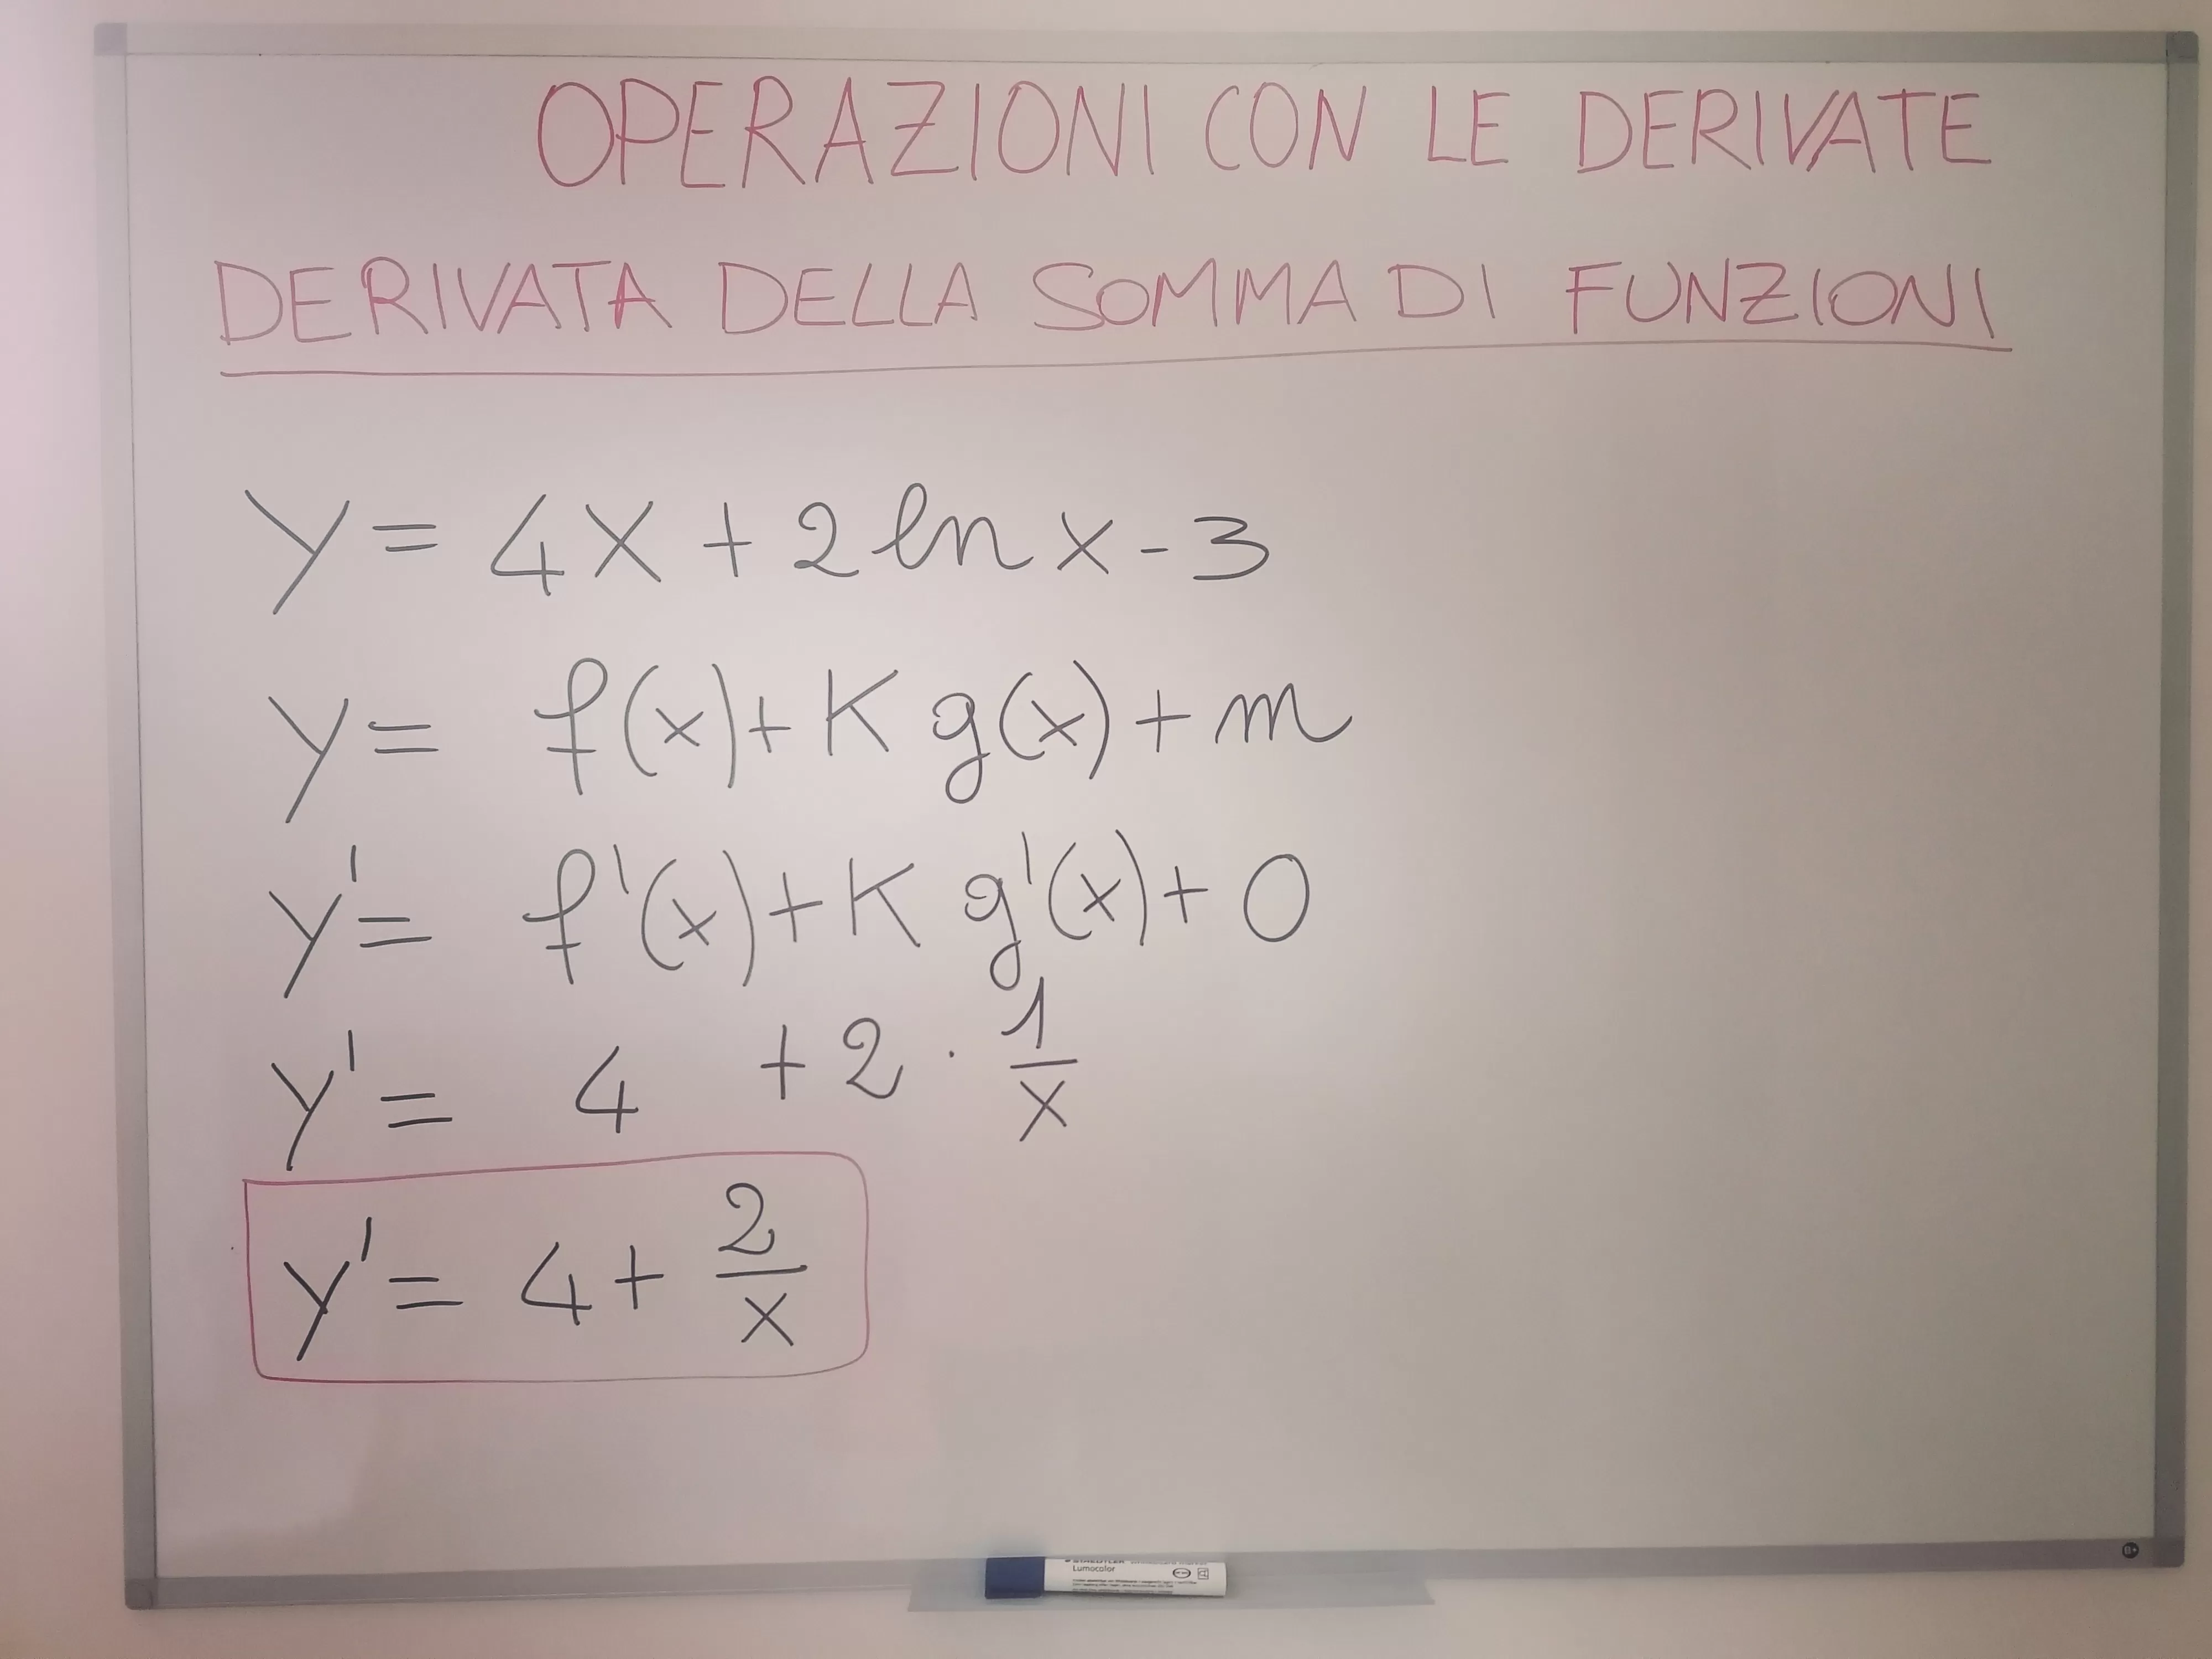 Calcola la derivata di y=4x+2 ln(x) - 3